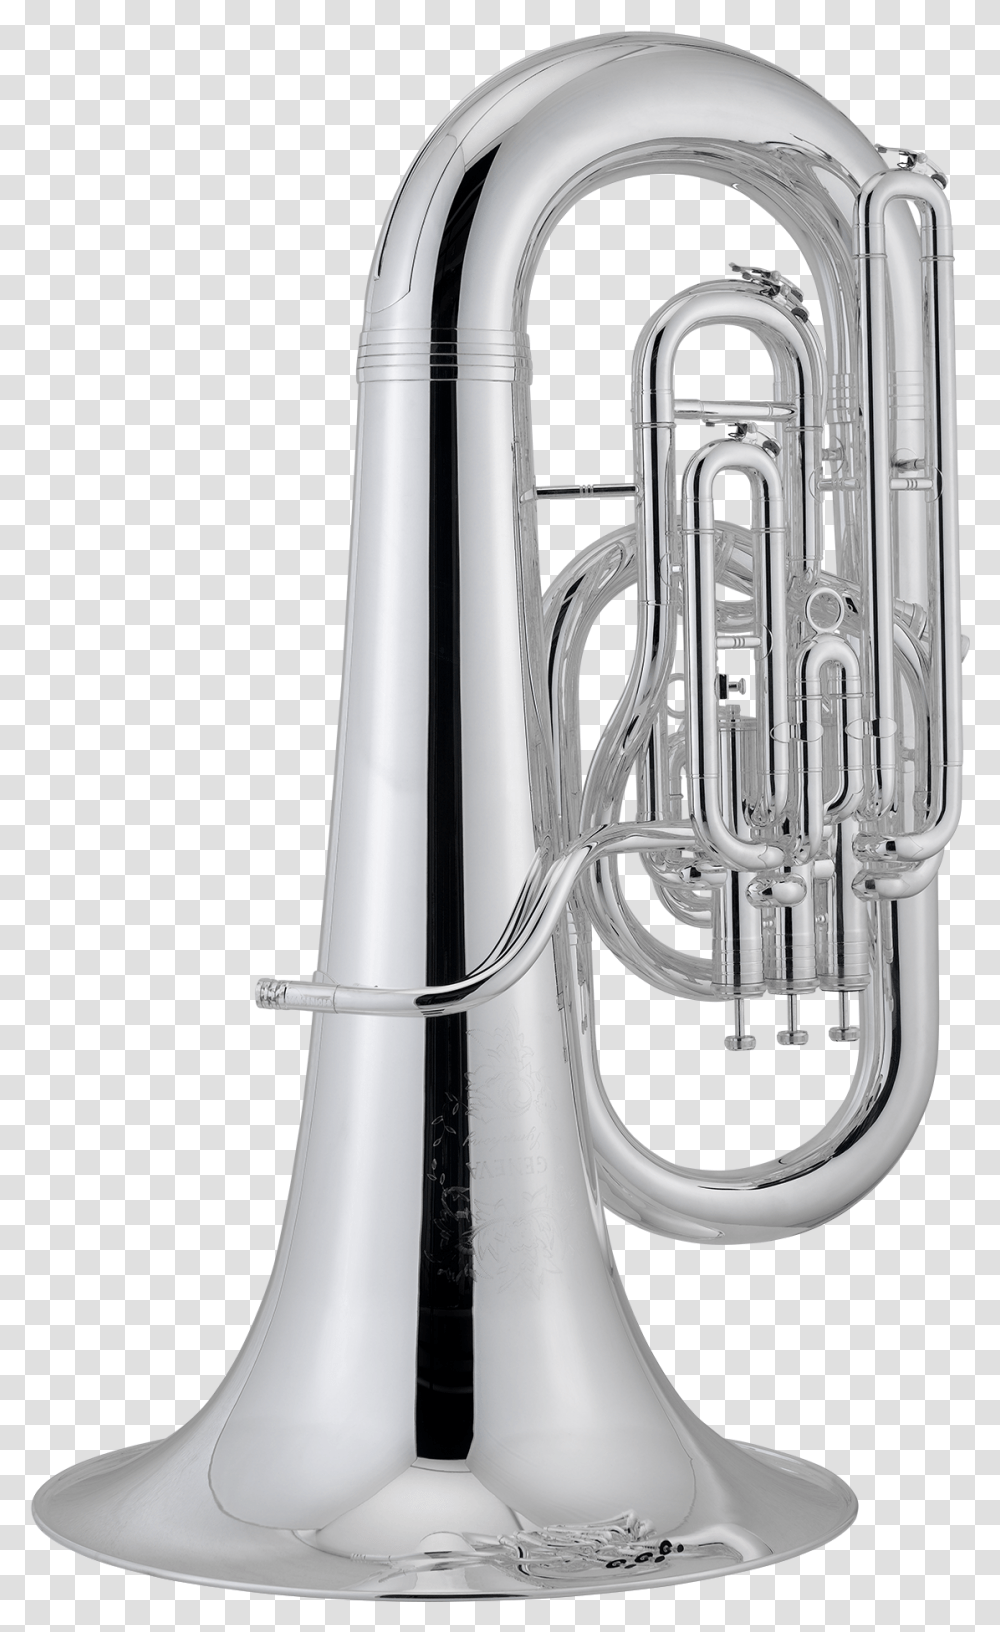 Trumpet, Flugelhorn, Brass Section, Musical Instrument, Sink Faucet Transparent Png